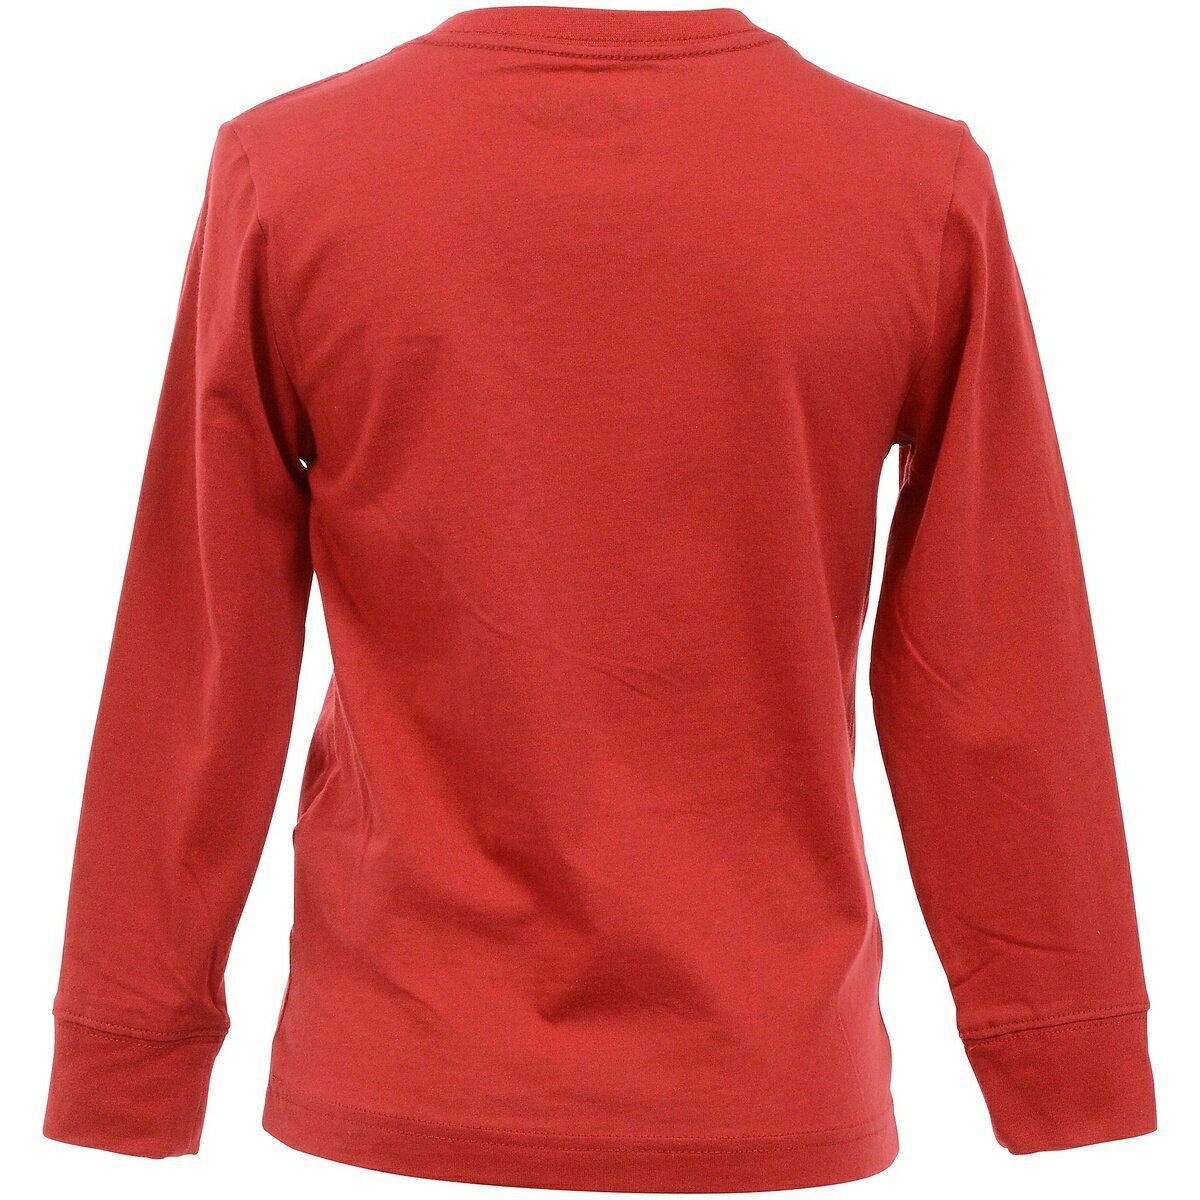 ナイキ (NIKE) JUMPMAN LONG SLEEVE T-SHIRT ジュニアスポーツウェア Tシャツ ボーイズ R78(赤) 85A903-R78